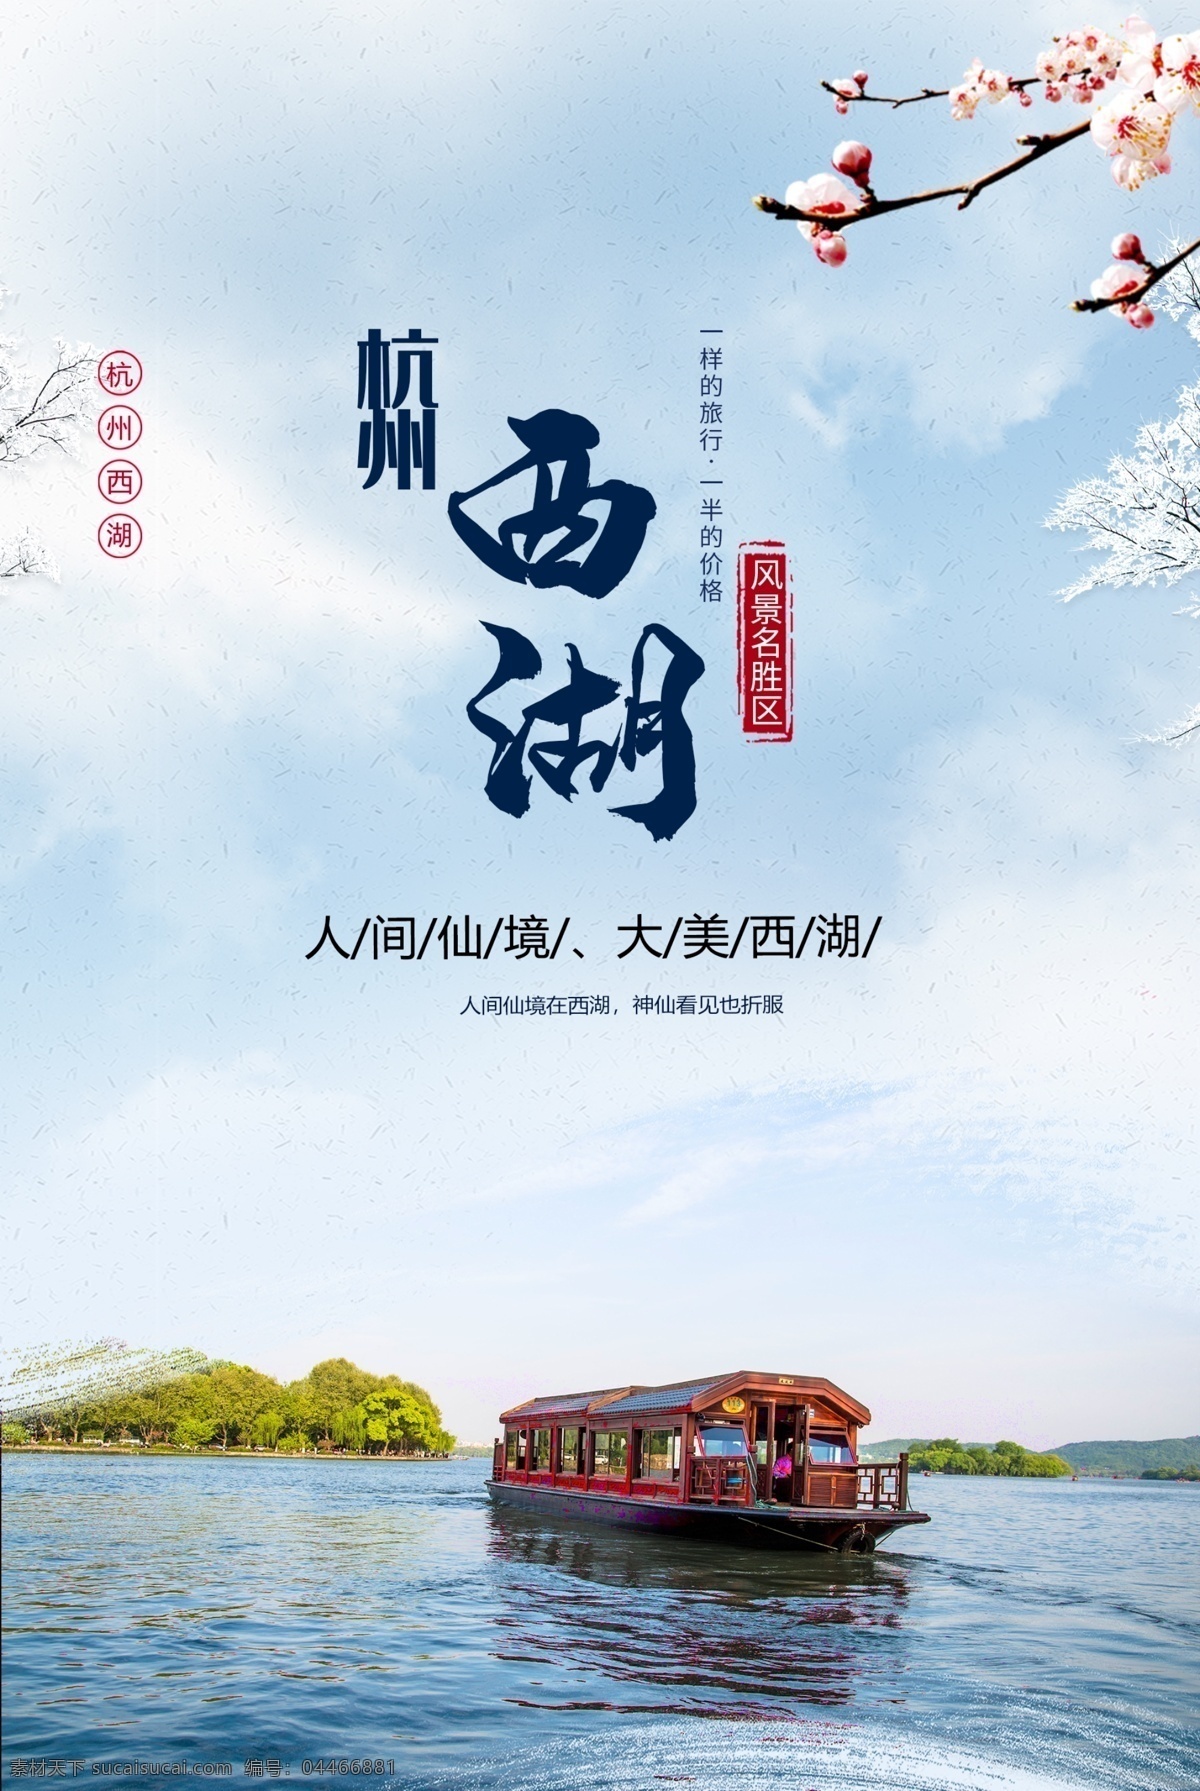 杭州西湖 旅游景点 促销 宣传海报 旅游 景点 宣传 海报 景区